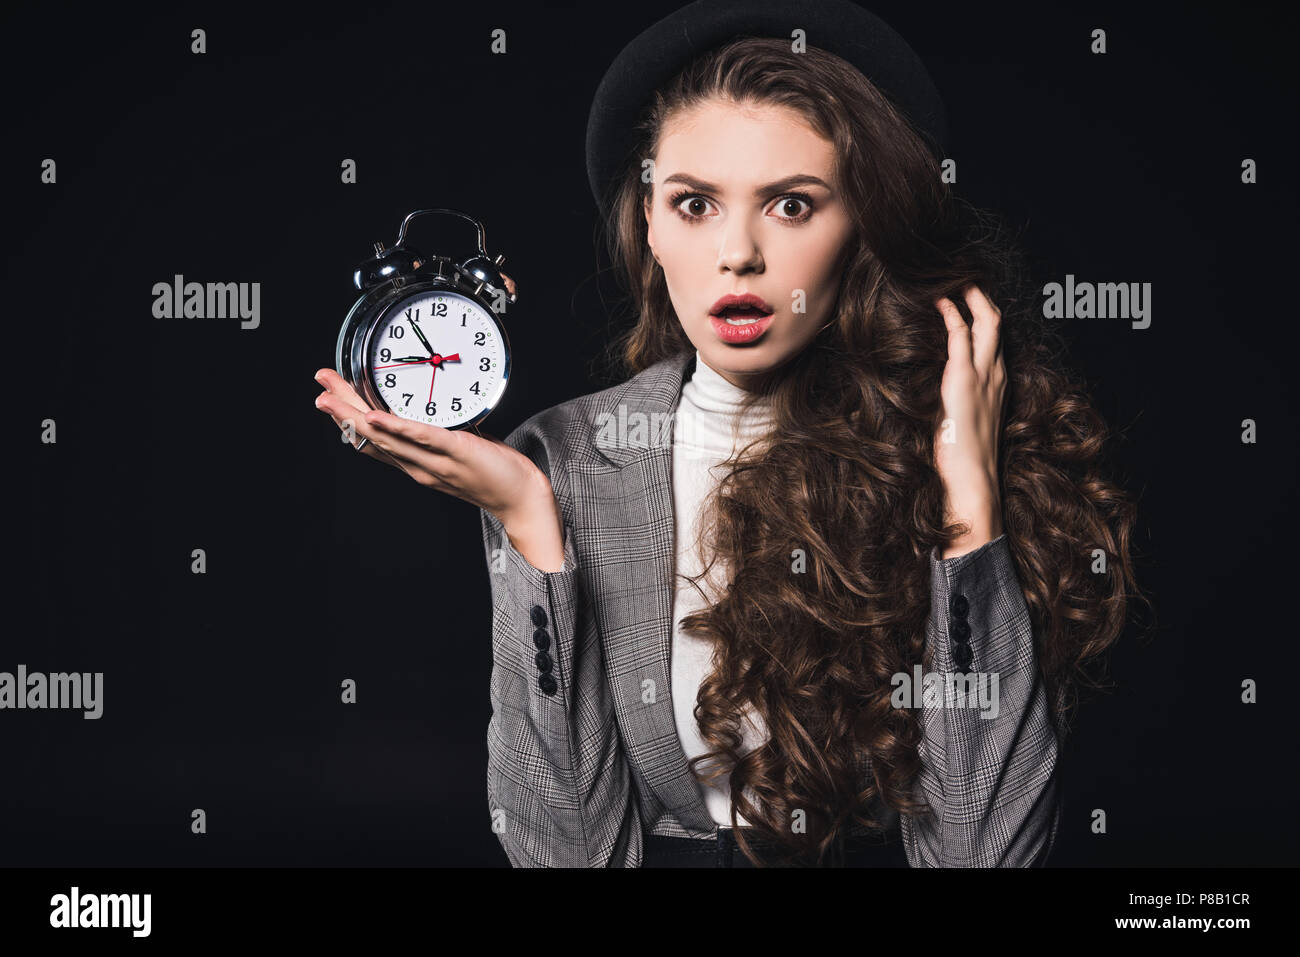 Рука держащая часы. Девушка и часы. Девушка показывает на часы. Девочка держит часы. Девушка комната с часами.